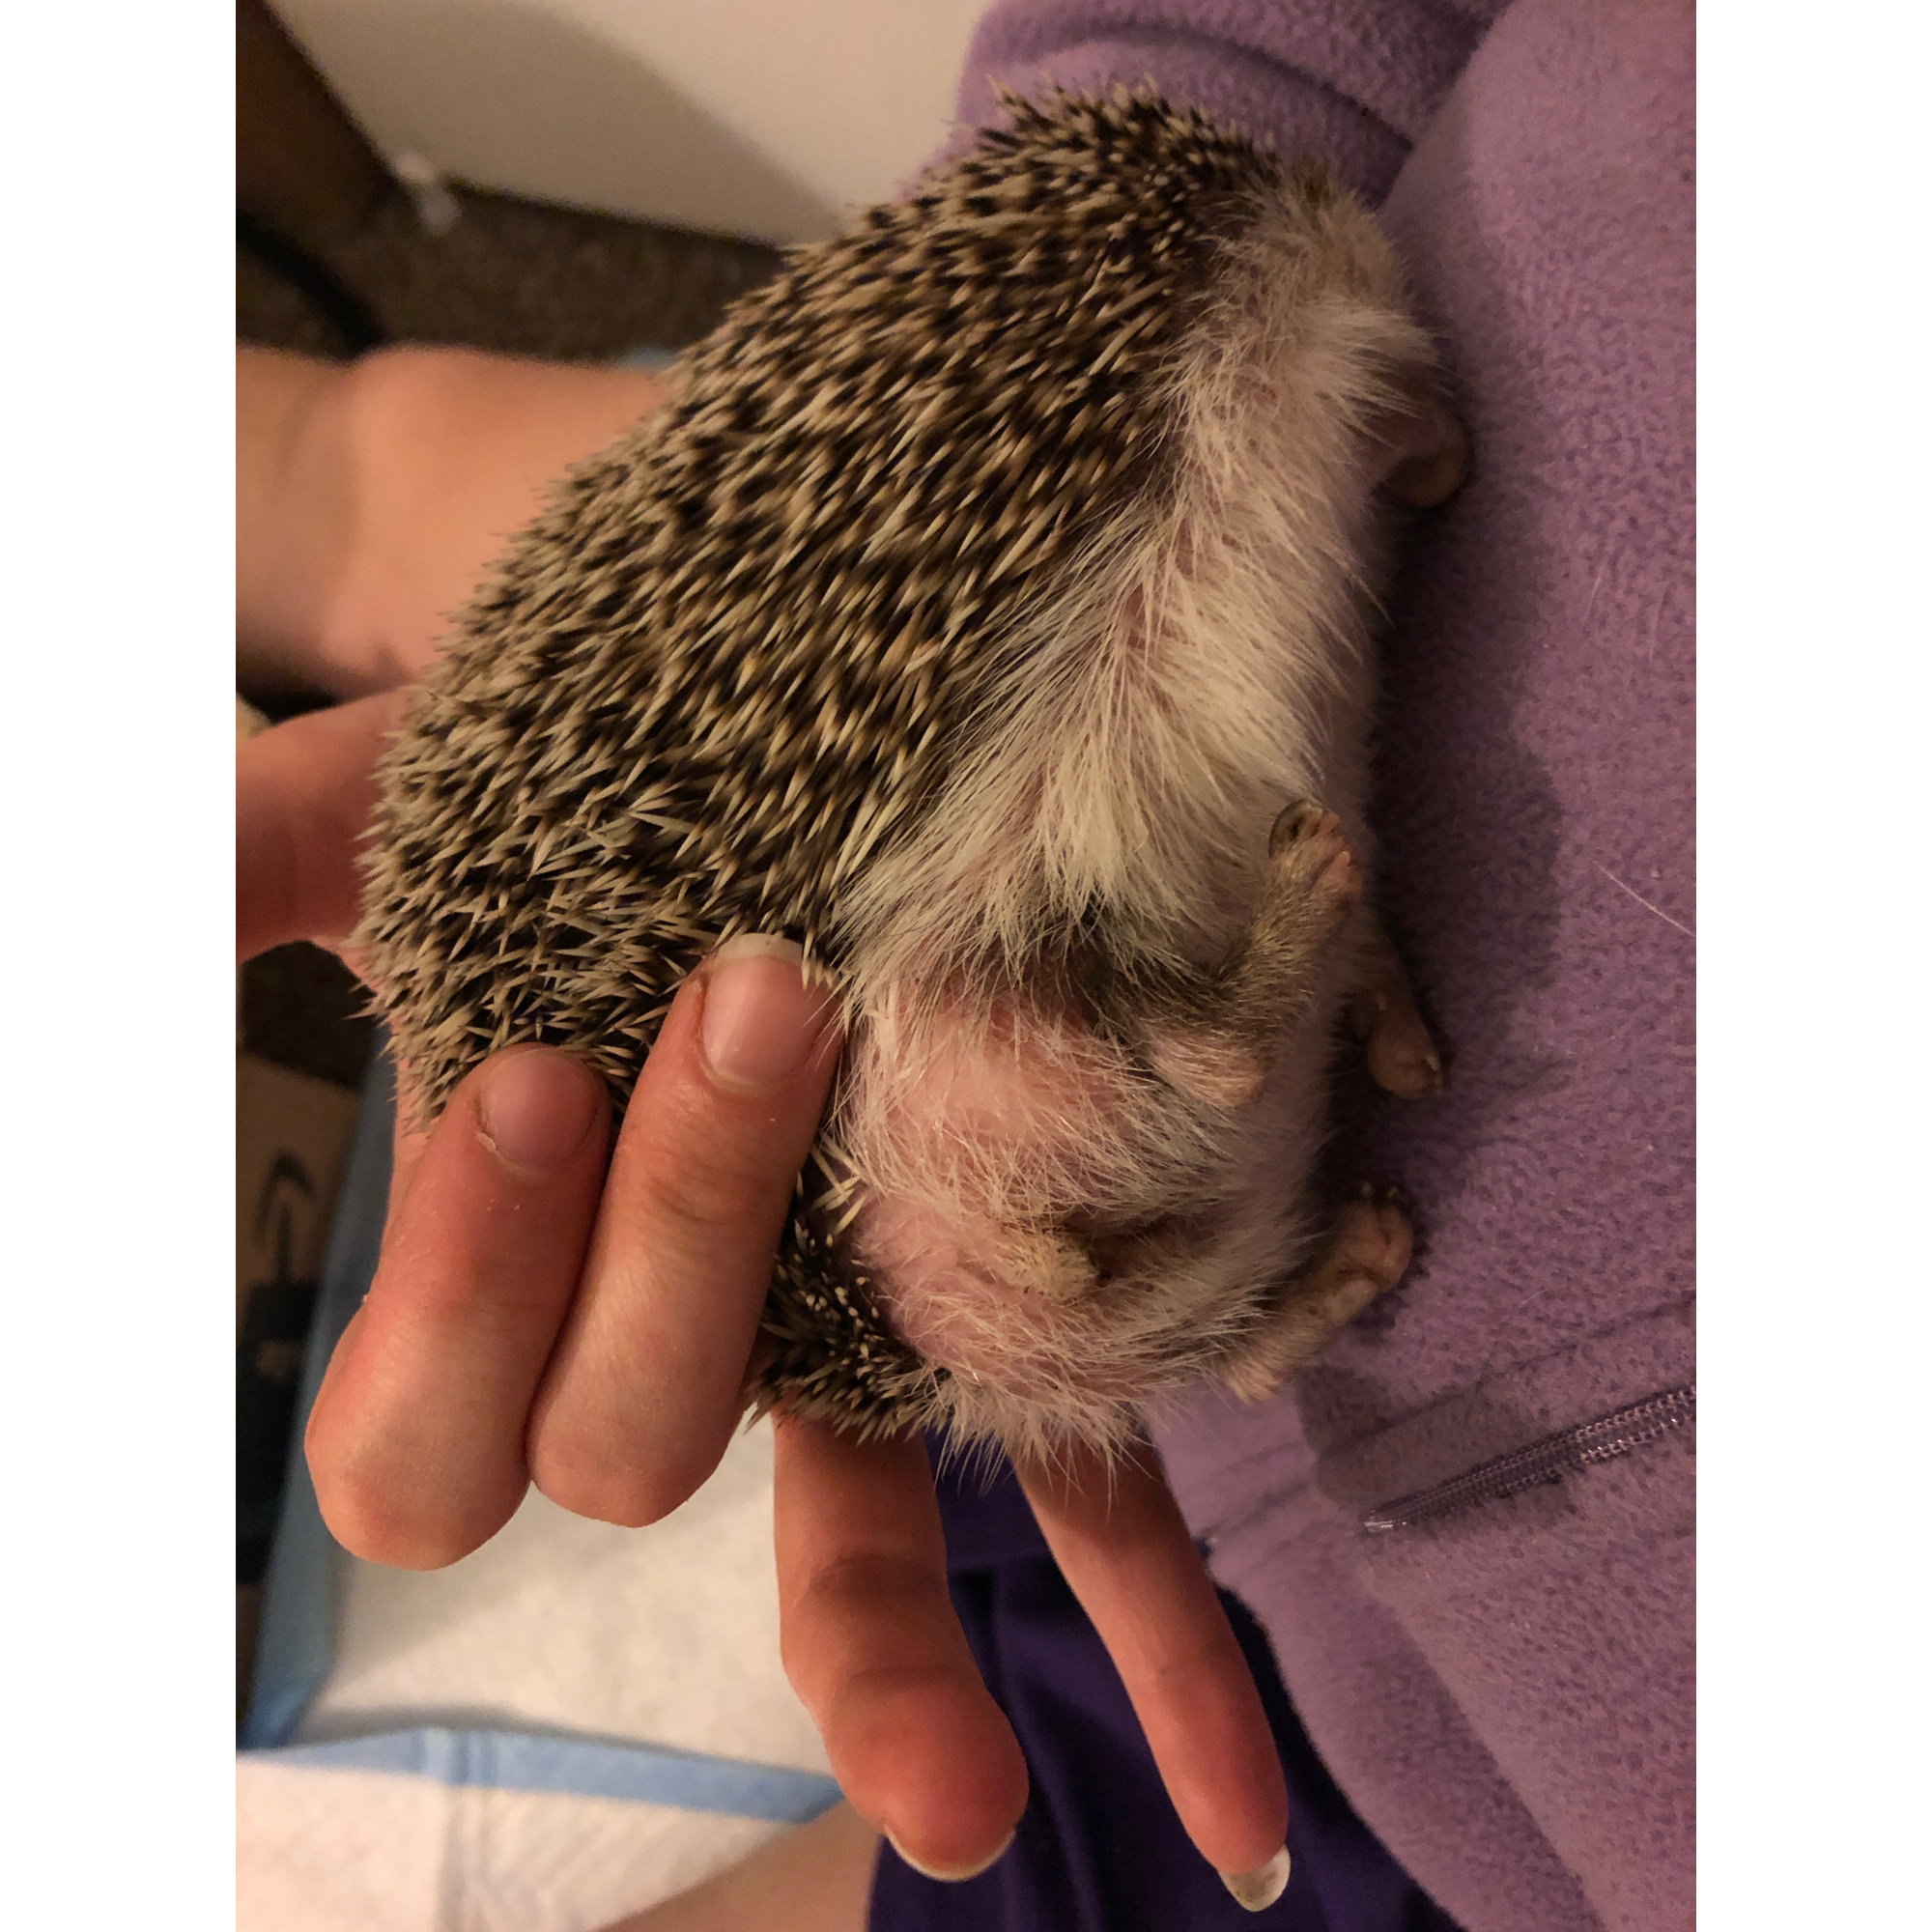 Four-toed Hedgehog